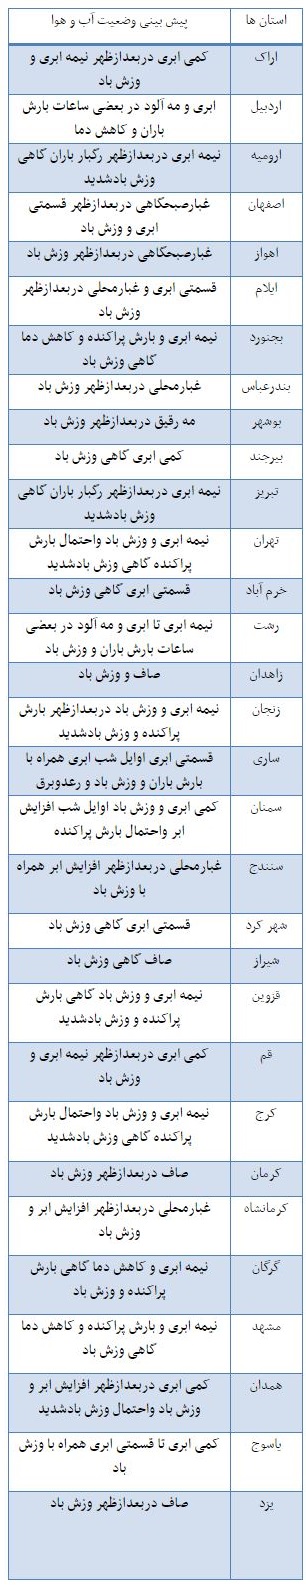 دمای هوای سردترین و گرمترین استان های ایران + جدول